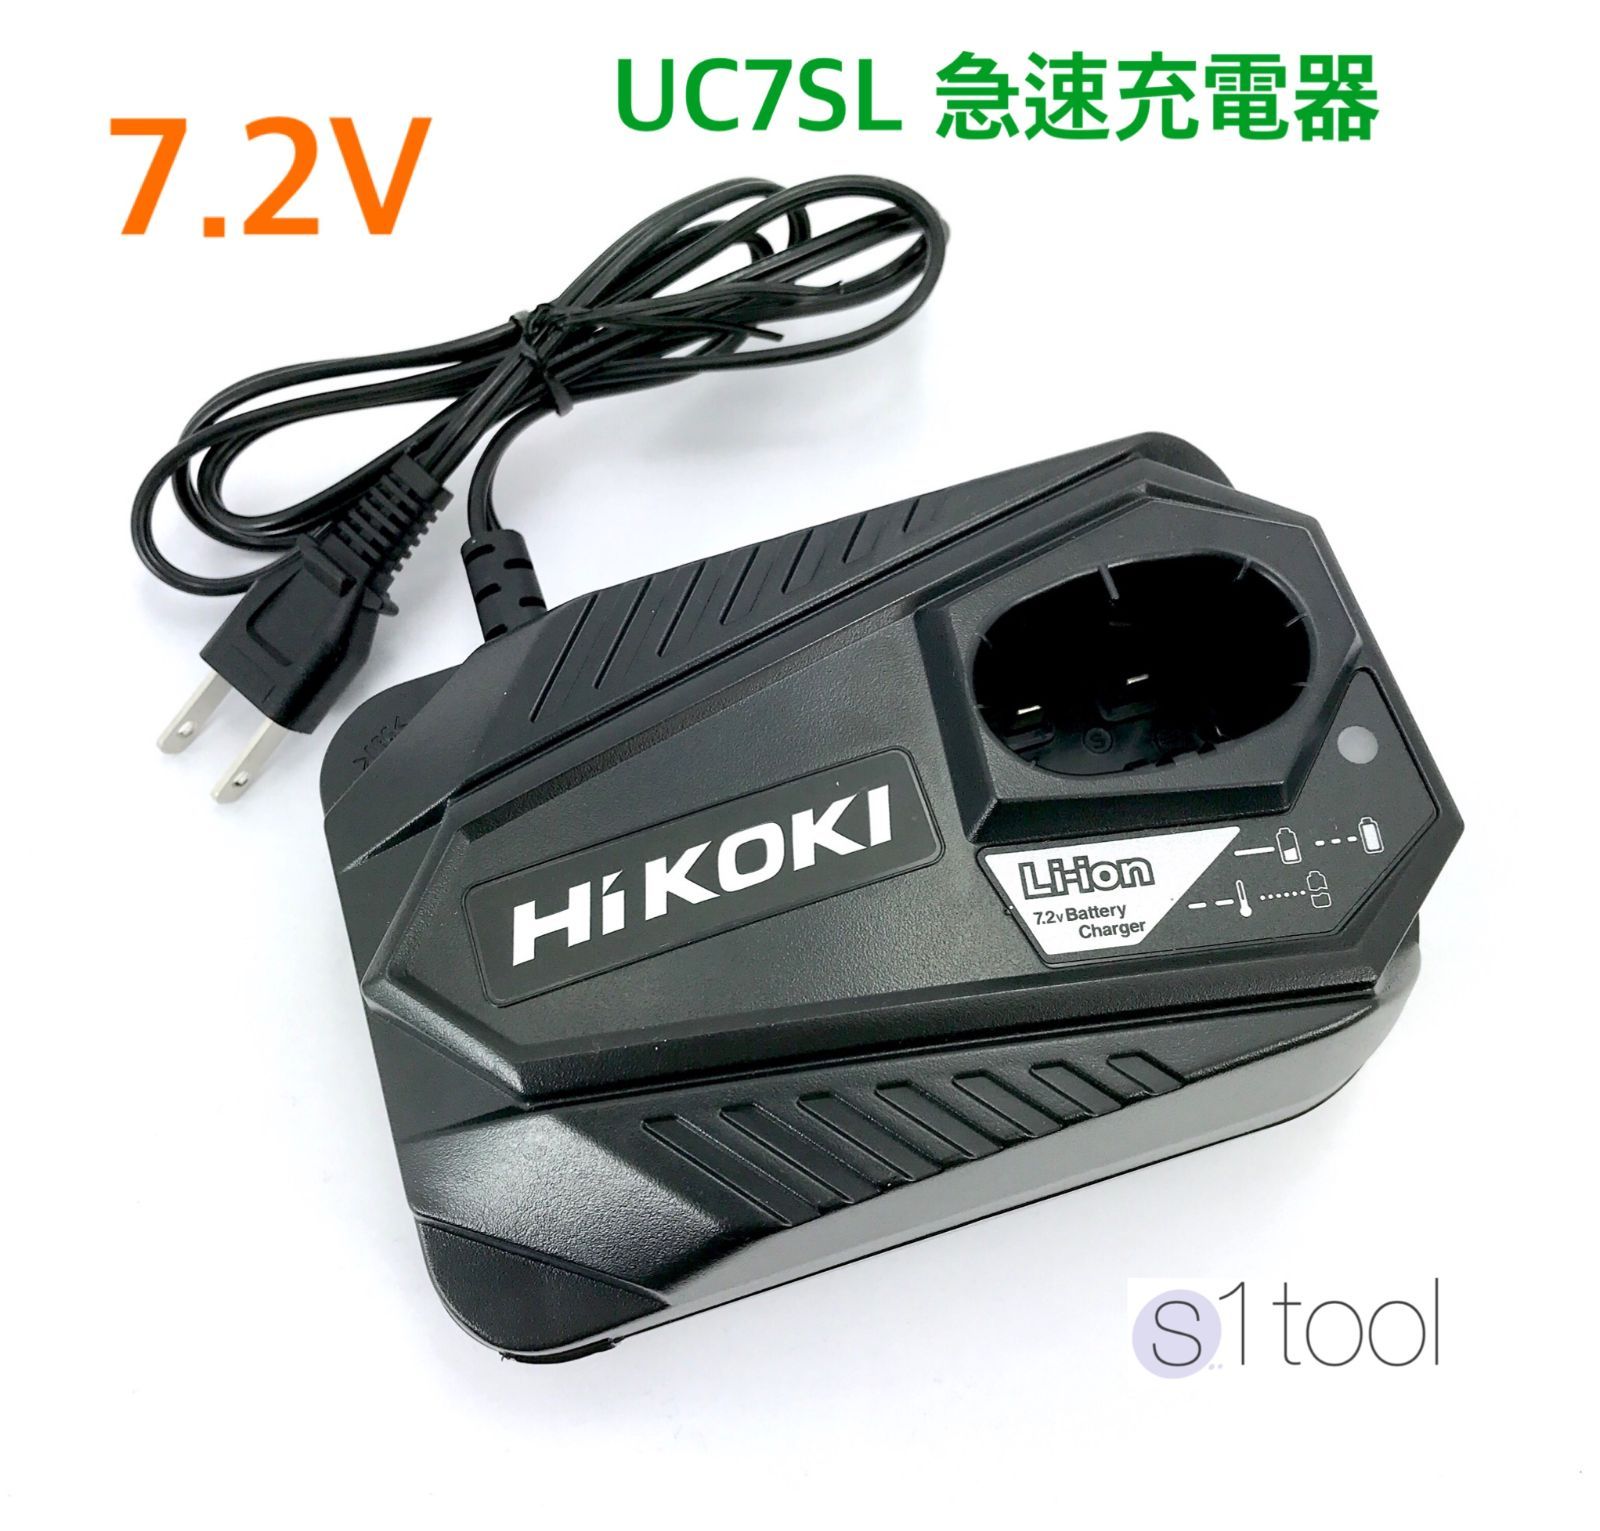 新品 HiKOKI ハイコーキ 日立 充電器 UC7SL 1個